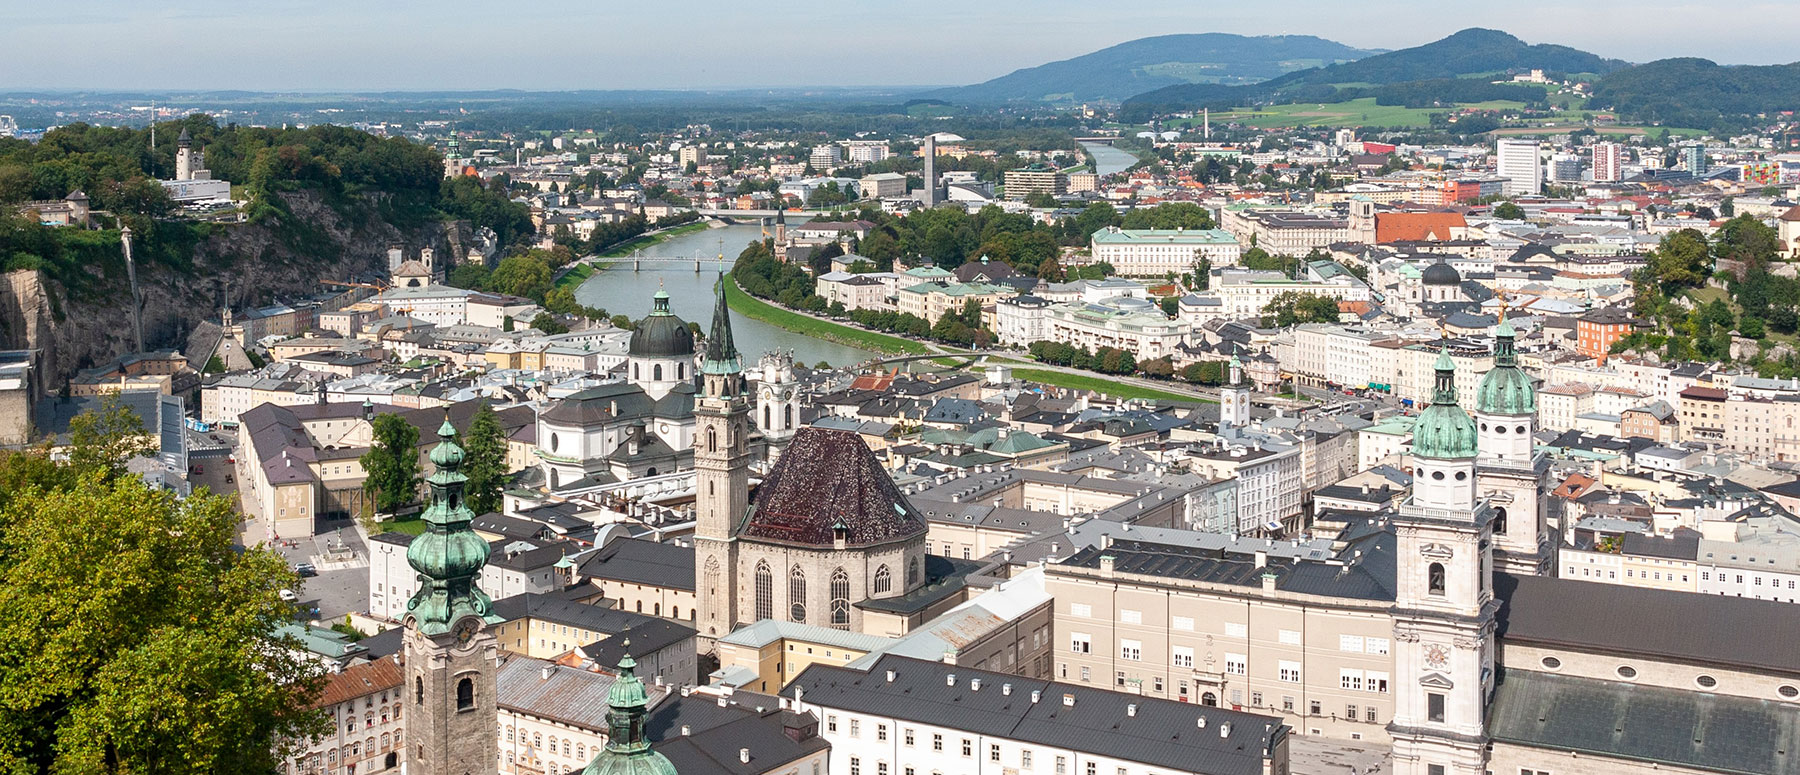 Blick von der Burg auf die Stadt Salzburg im Sommer, Slama